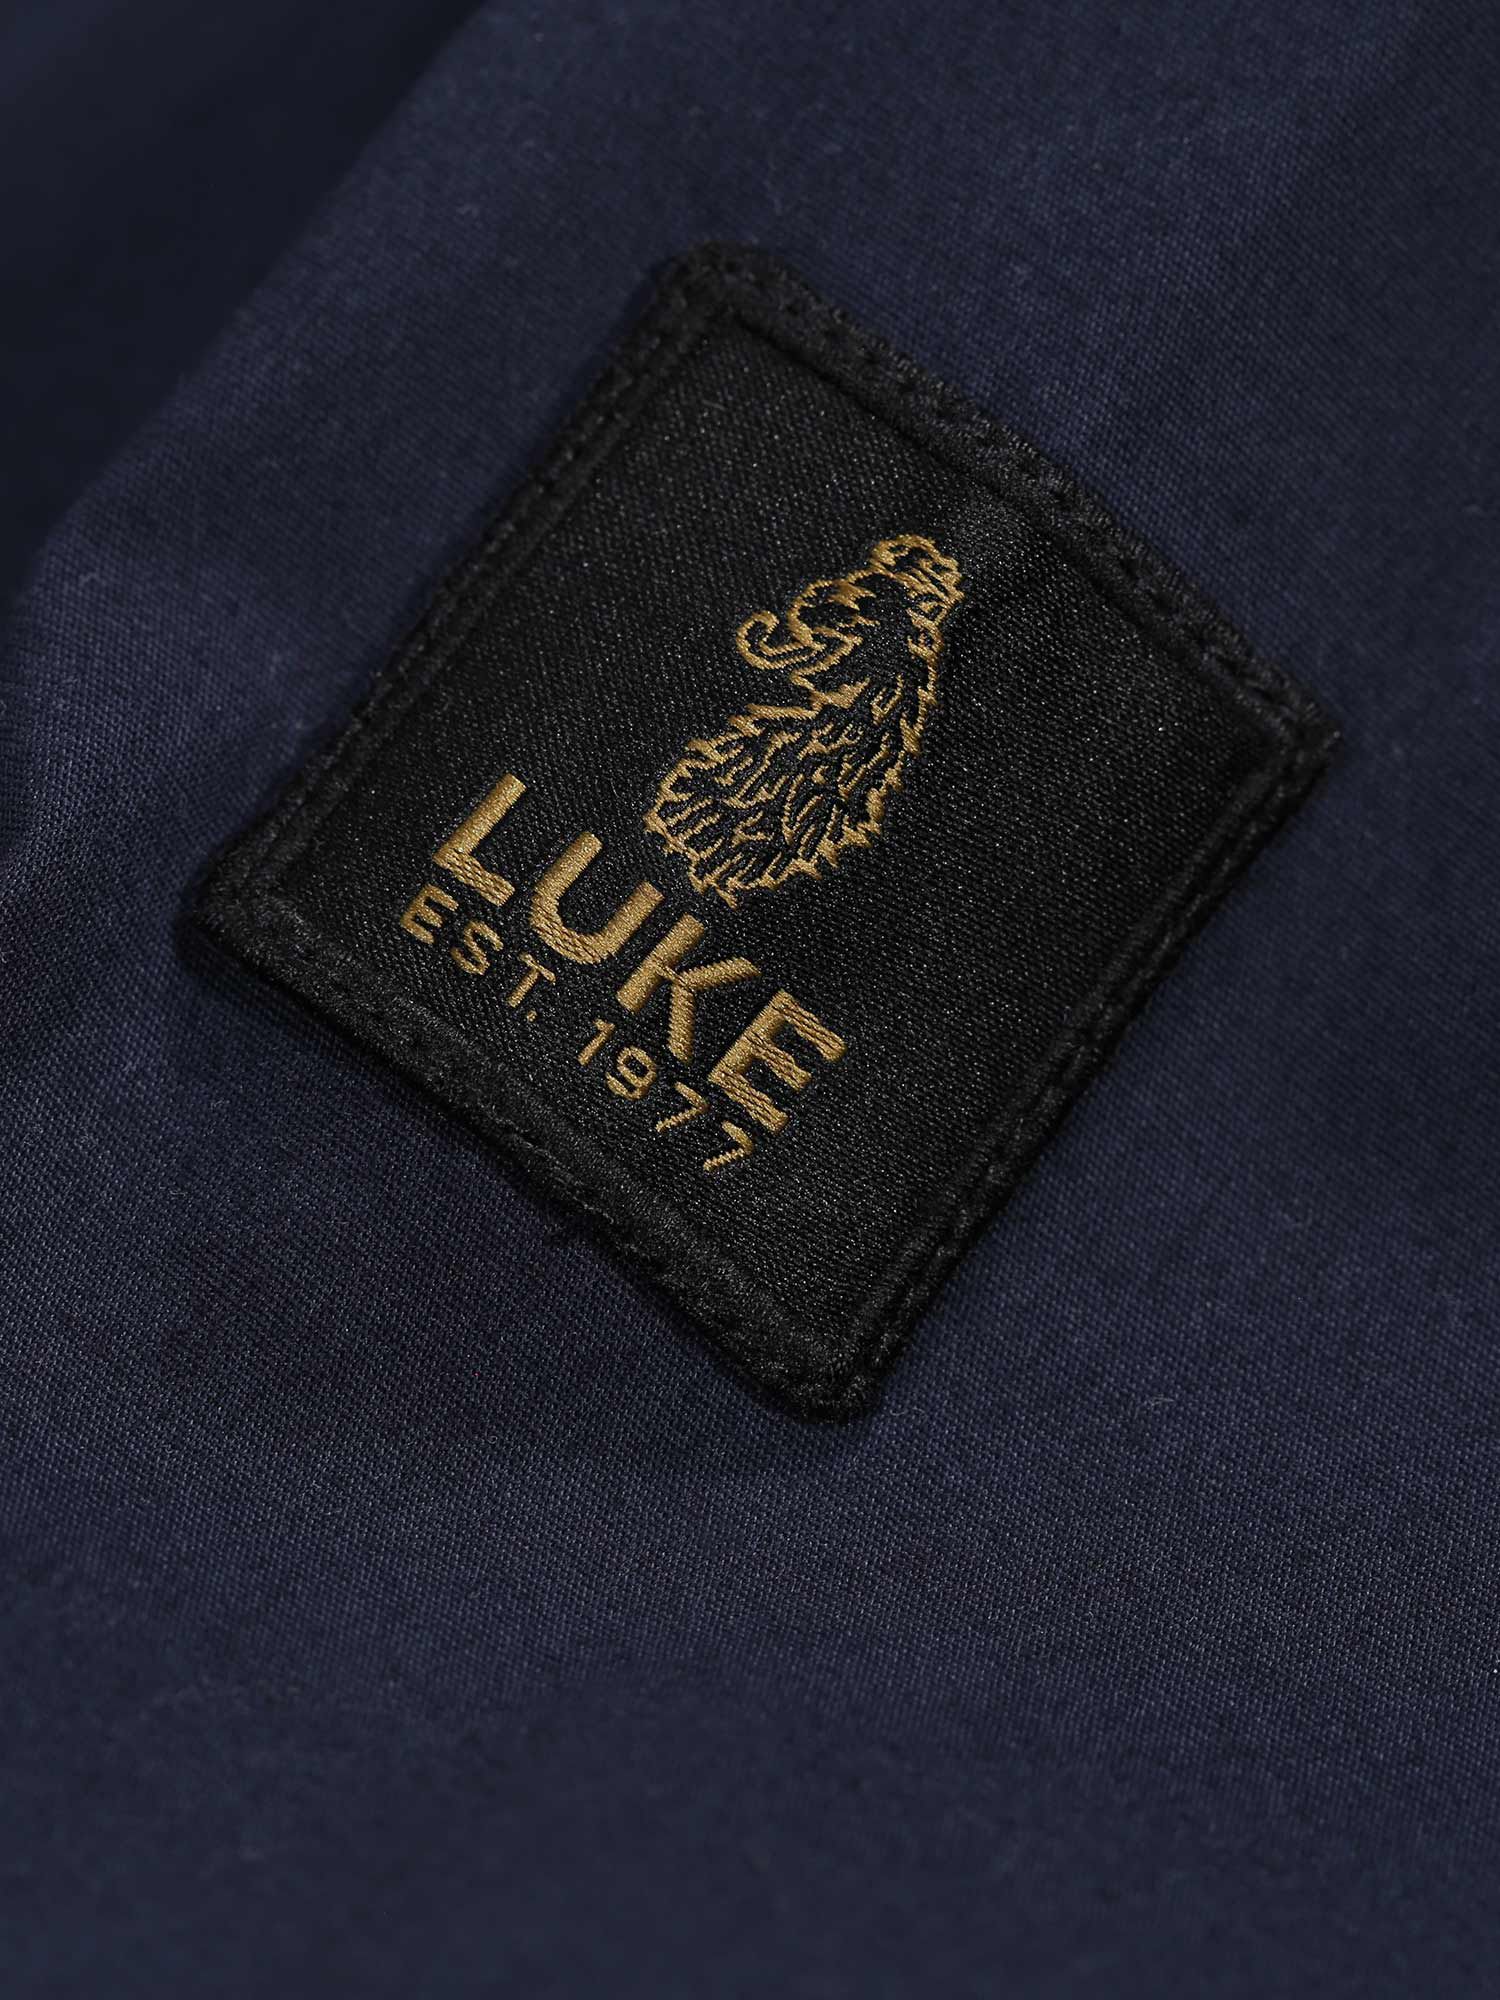 Buy LUKE 1977 Nectans Glen Long Sleeve Shirt Online at johnlewis.com